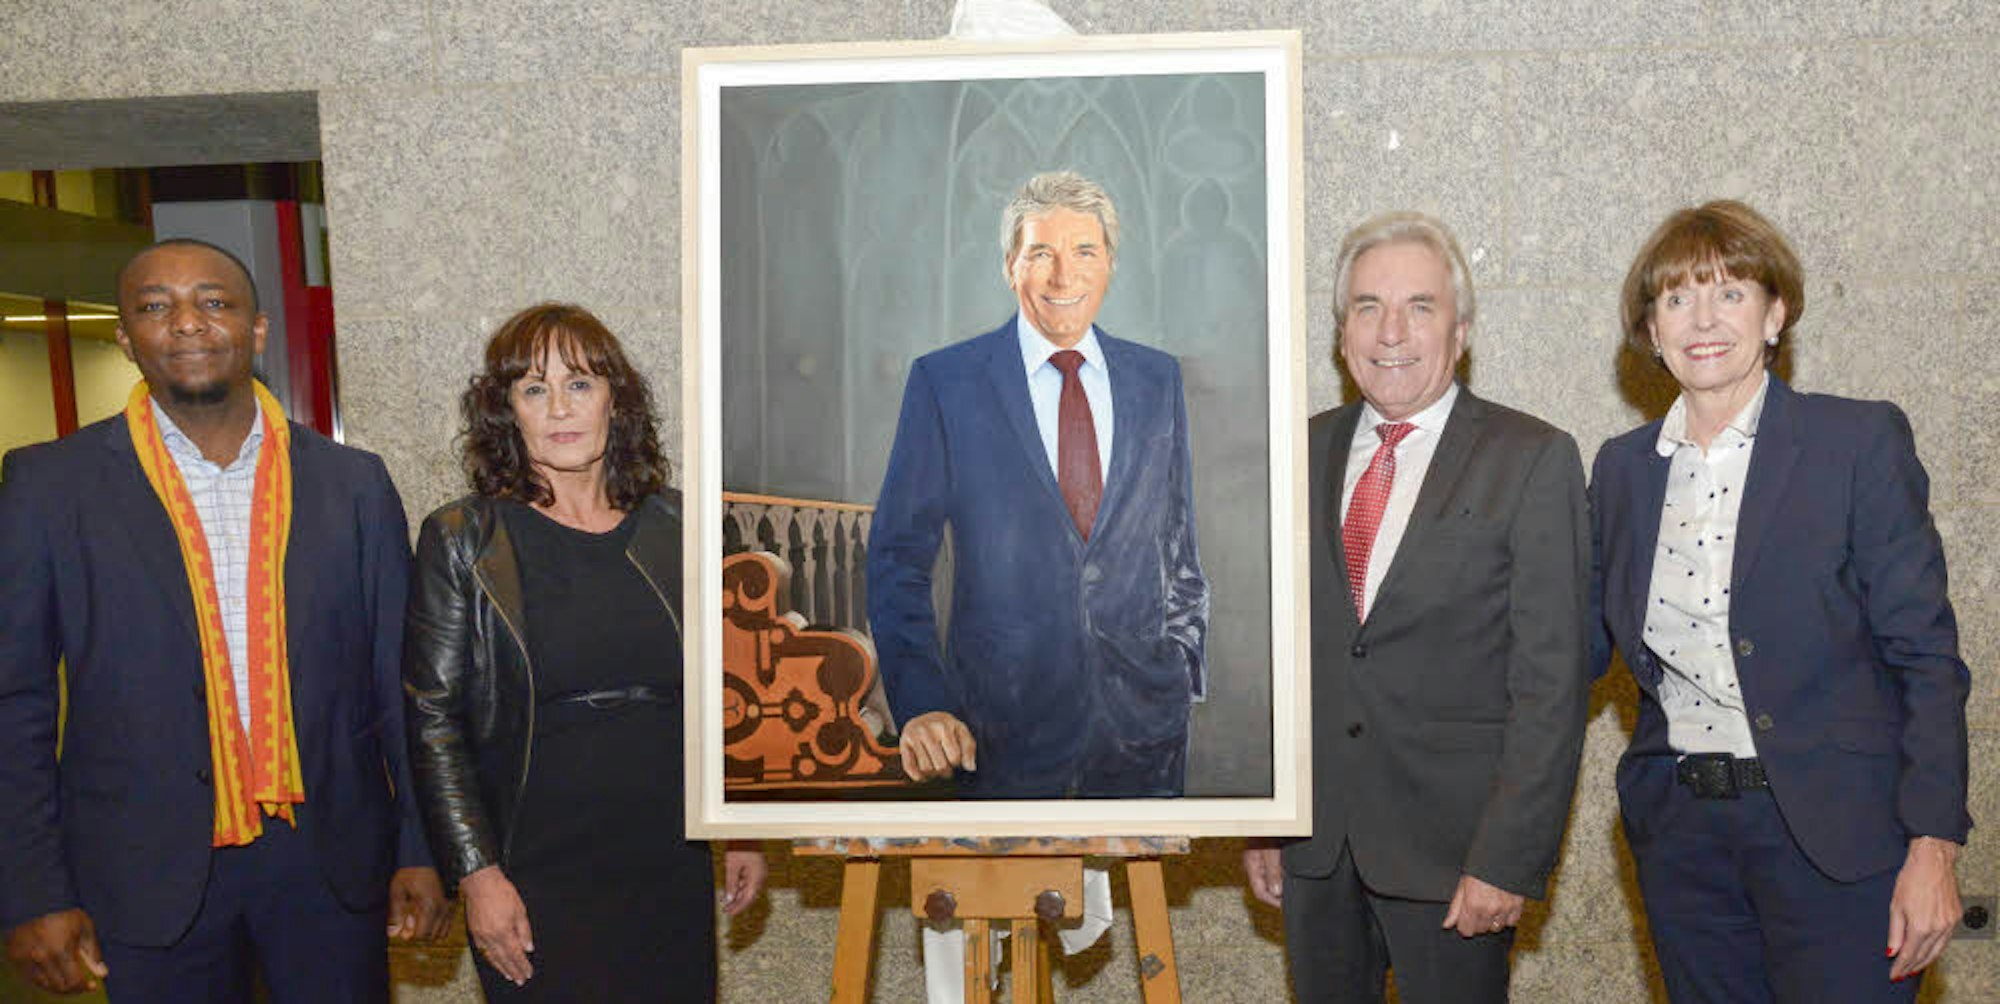 Unverkennbar Roters: Der ehemalige Oberbürgermeister ist erfreut über sein Porträt, das OB Henriette Rekers enthüllte. Künstler Peter Uka (links, daneben Roters Frau Angela) hat ihn gemalt, wie „ich ihn erlebe“.